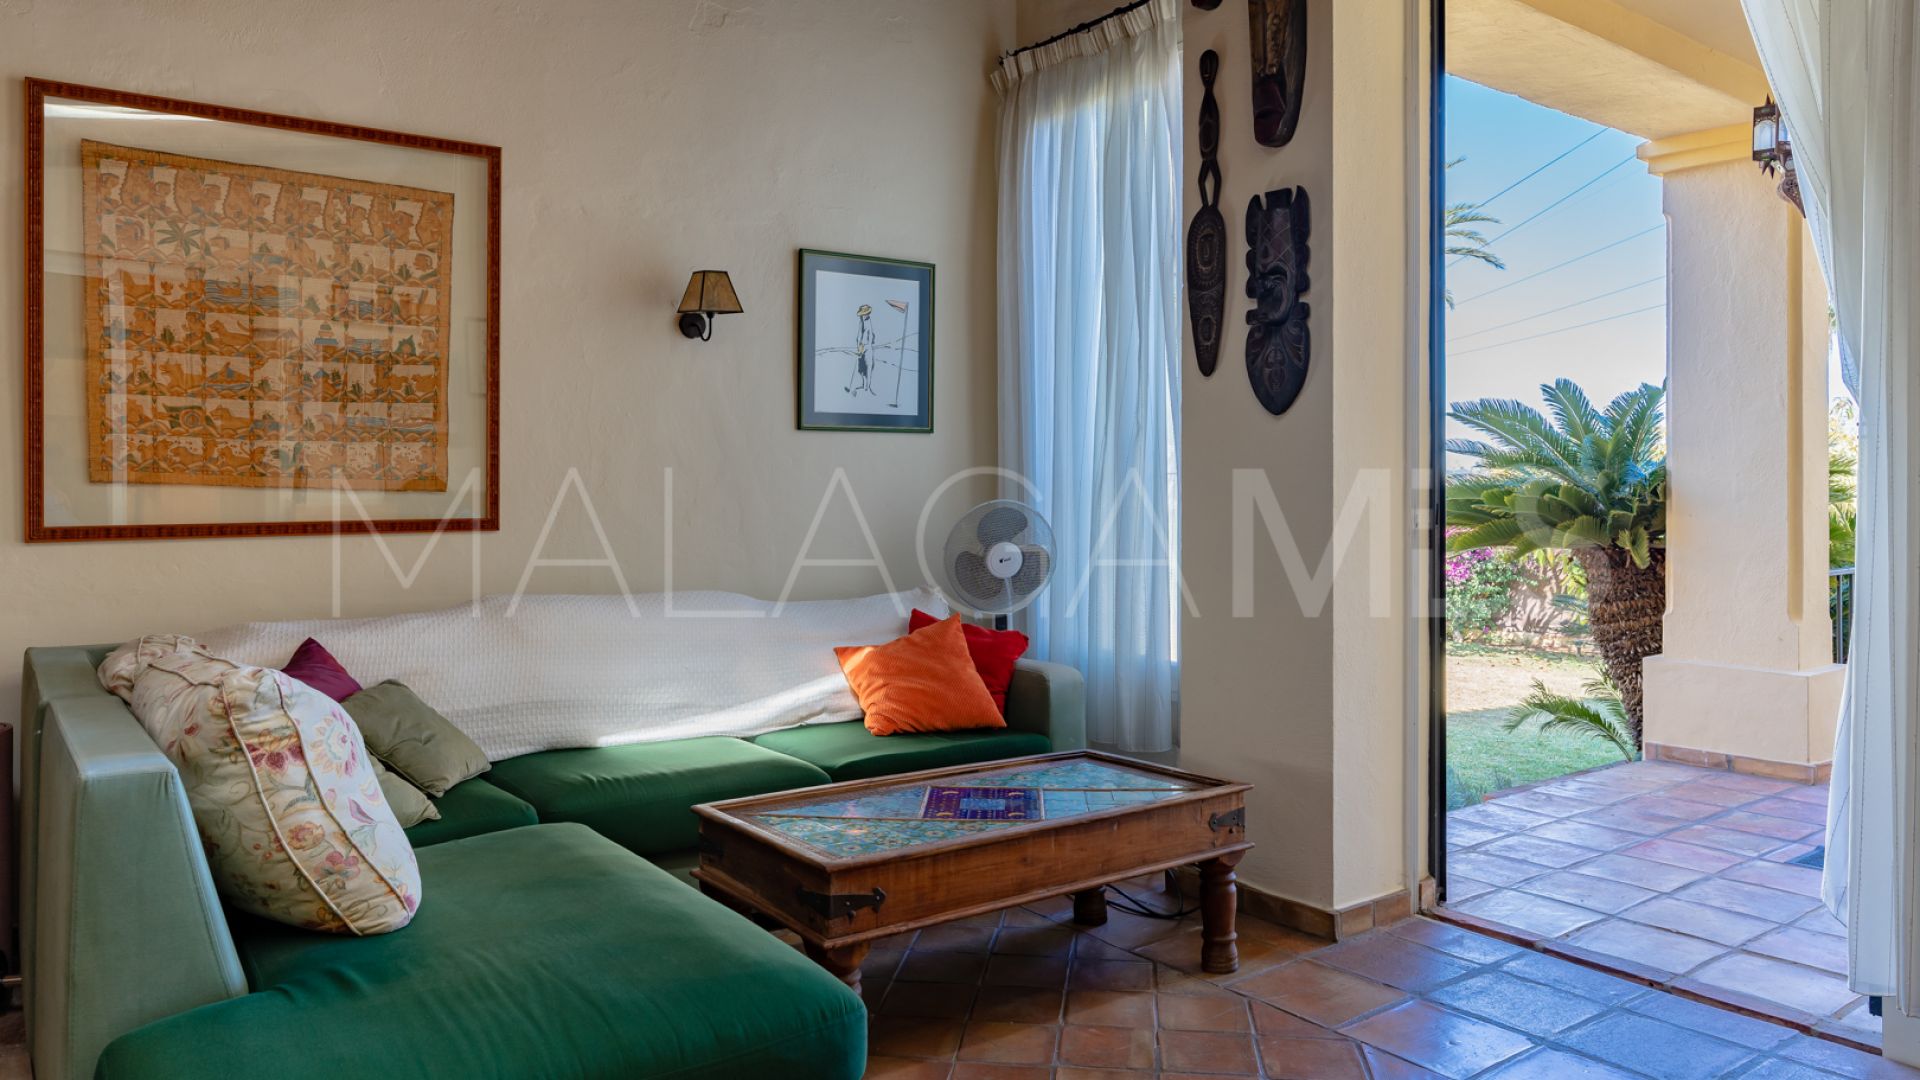 4 bedrooms villa in Valdeolletas for sale